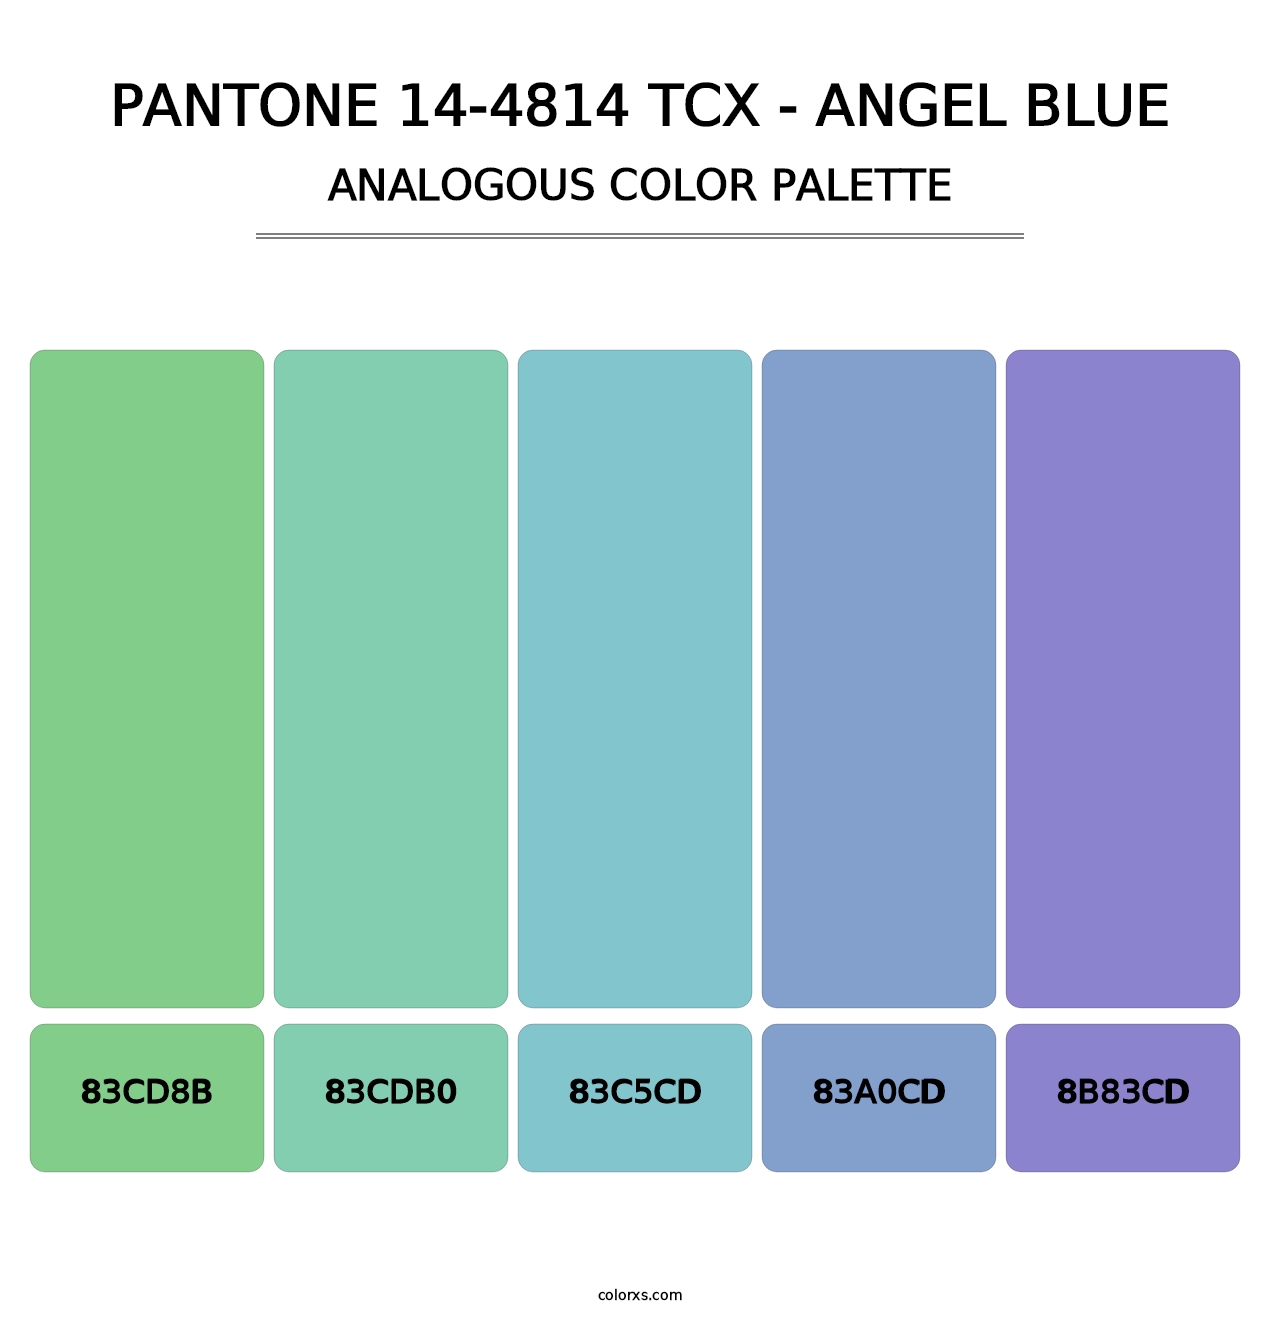 PANTONE 14-4814 TCX - Angel Blue - Analogous Color Palette